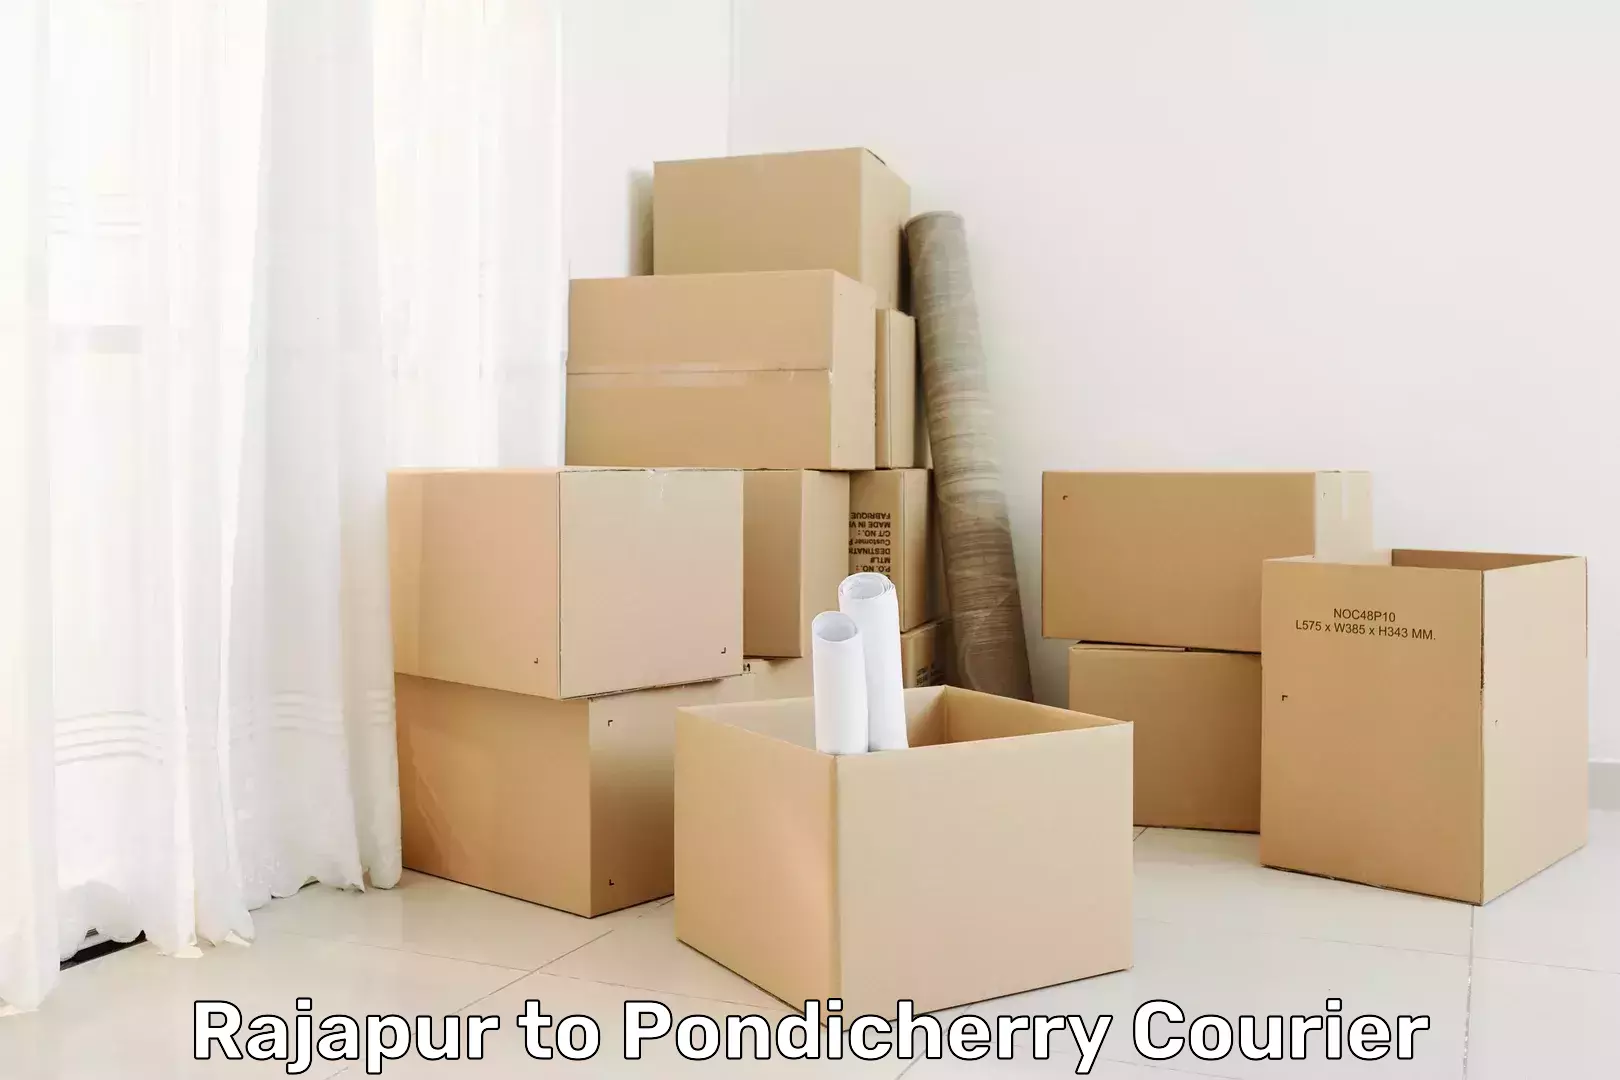 Efficient freight service Rajapur to Pondicherry